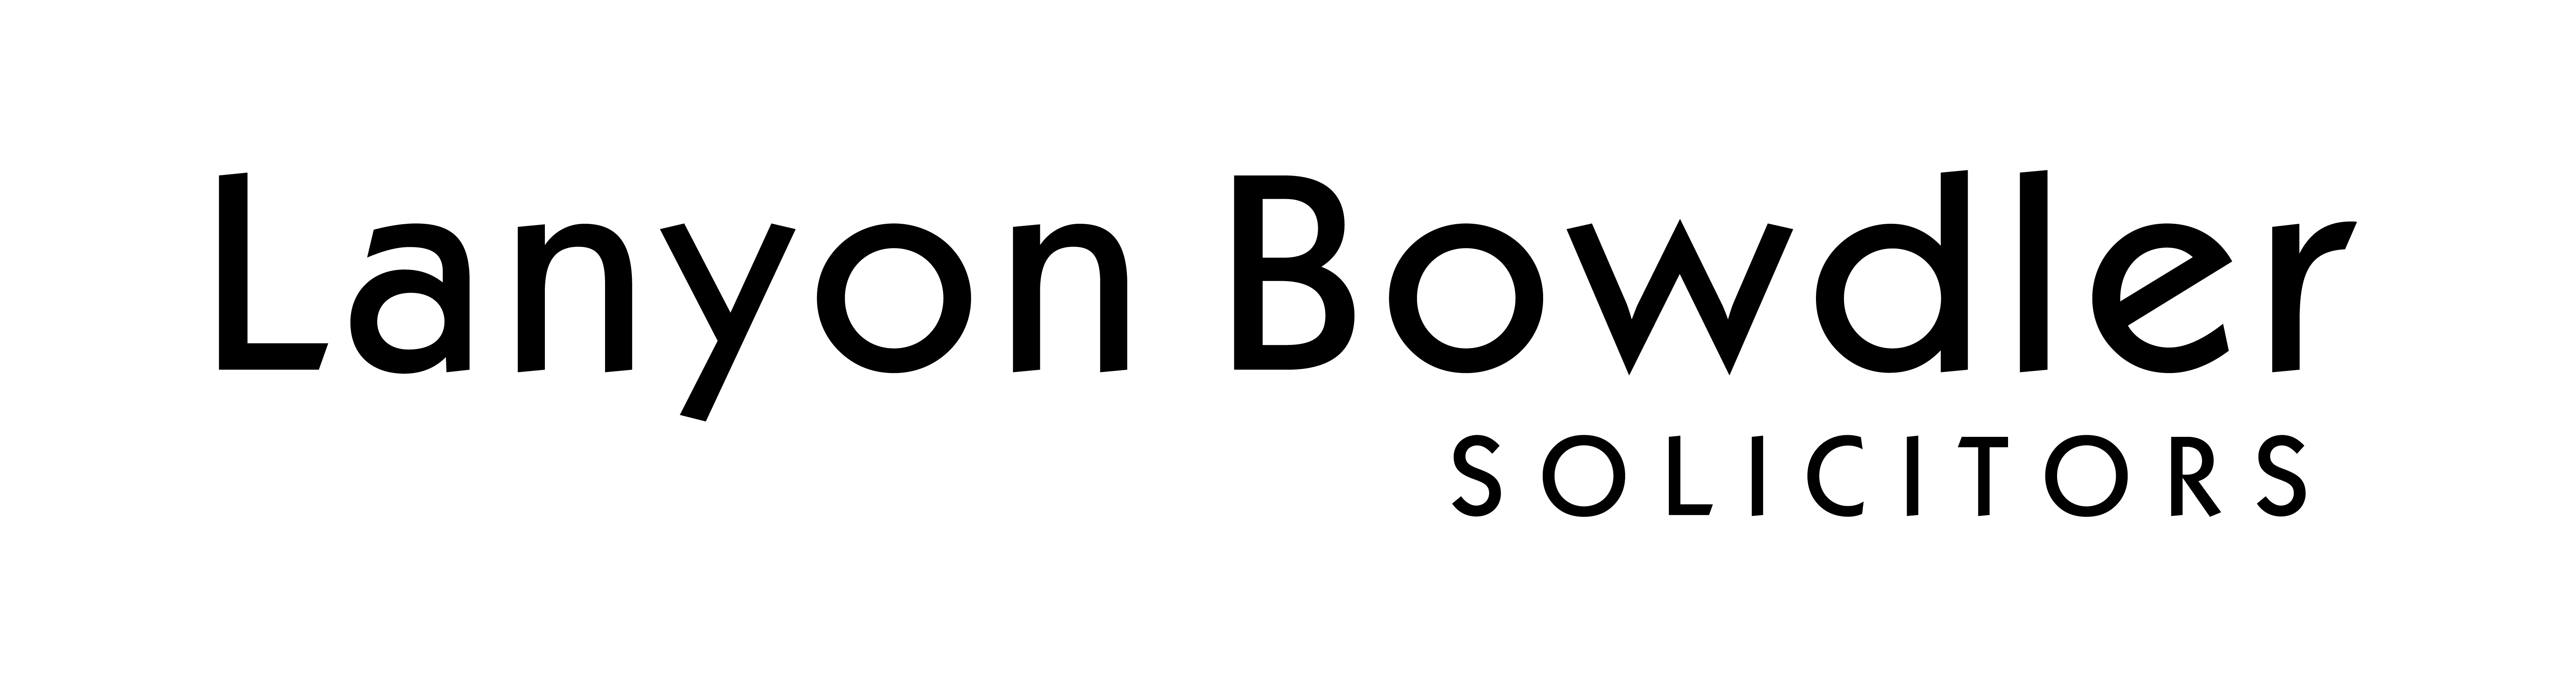 wellmeadow-lanyon-bowdler-logo